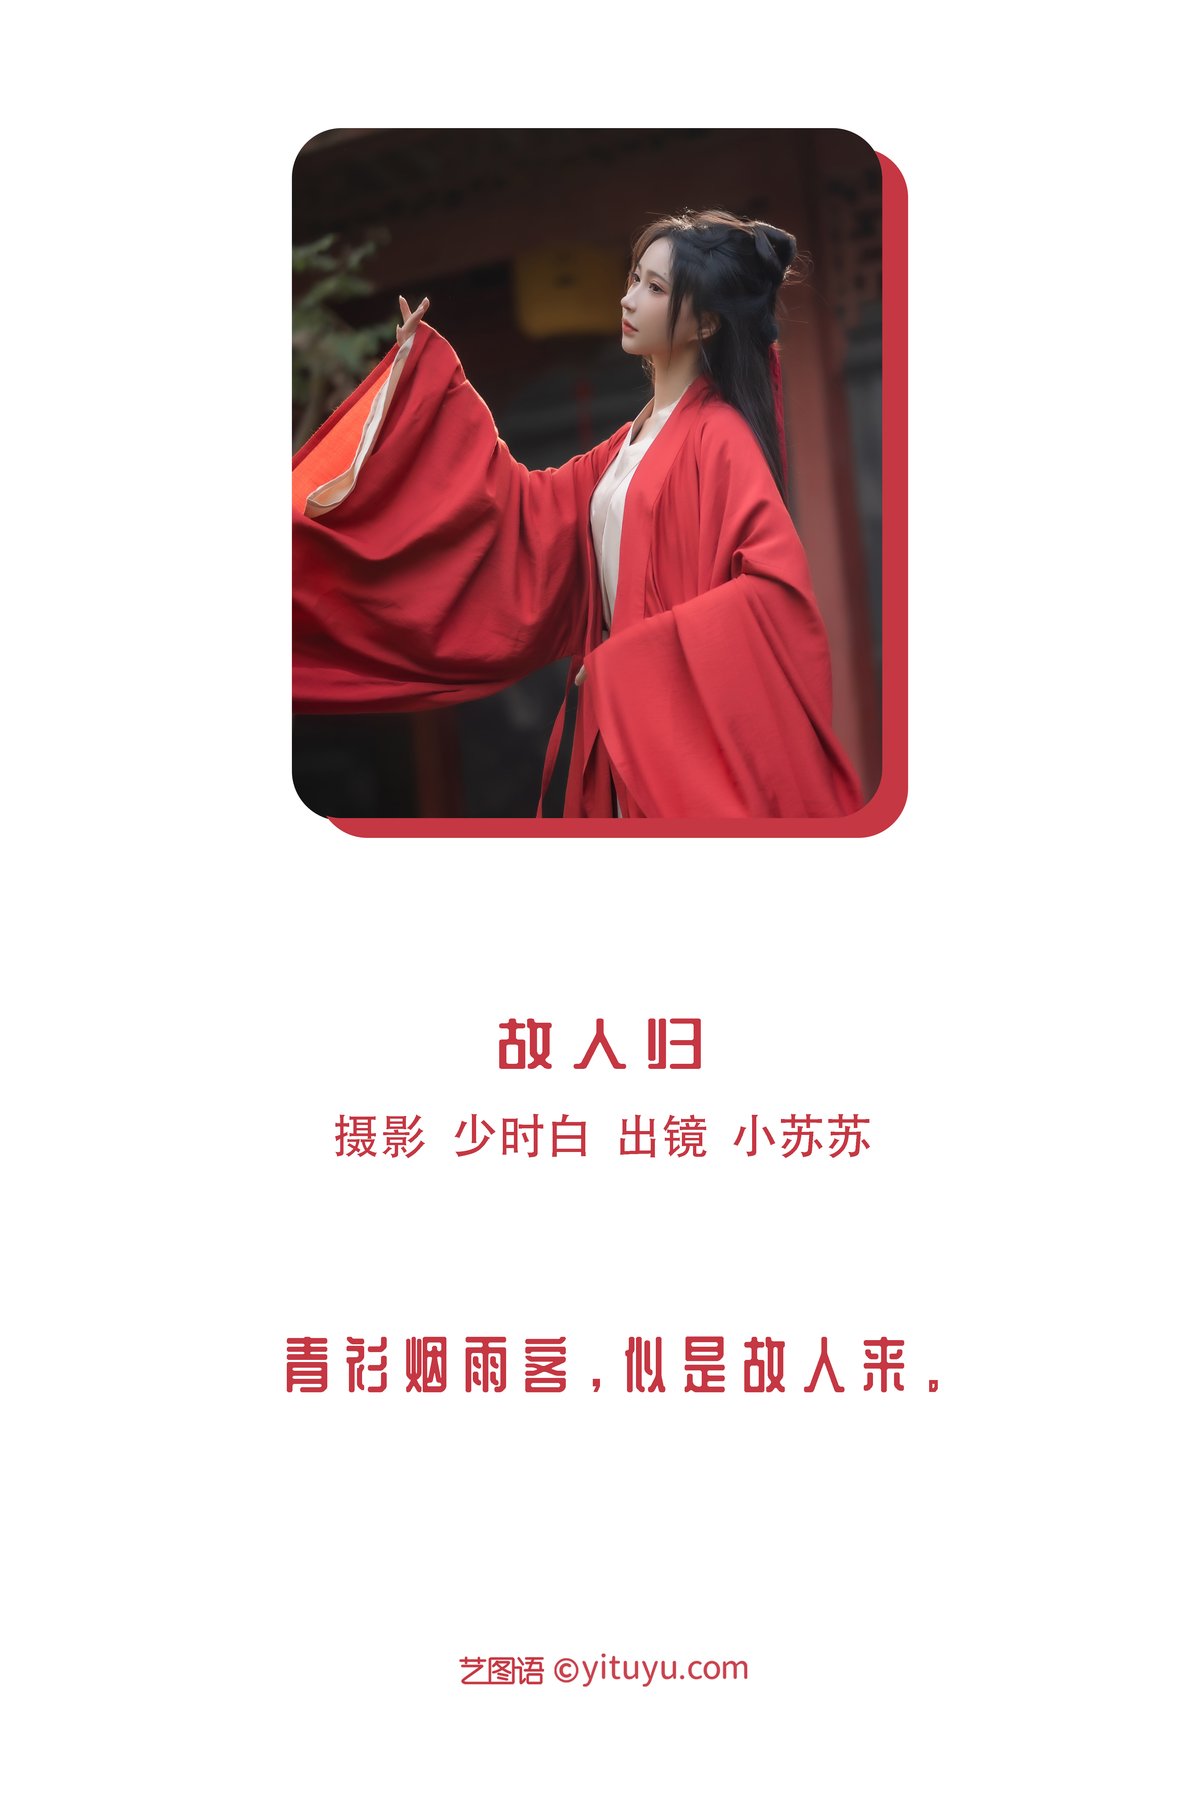 YiTuYu艺图语 Vol 3005 Qi Luo Sheng De Xiao Su Su 0001 2895256527.jpg